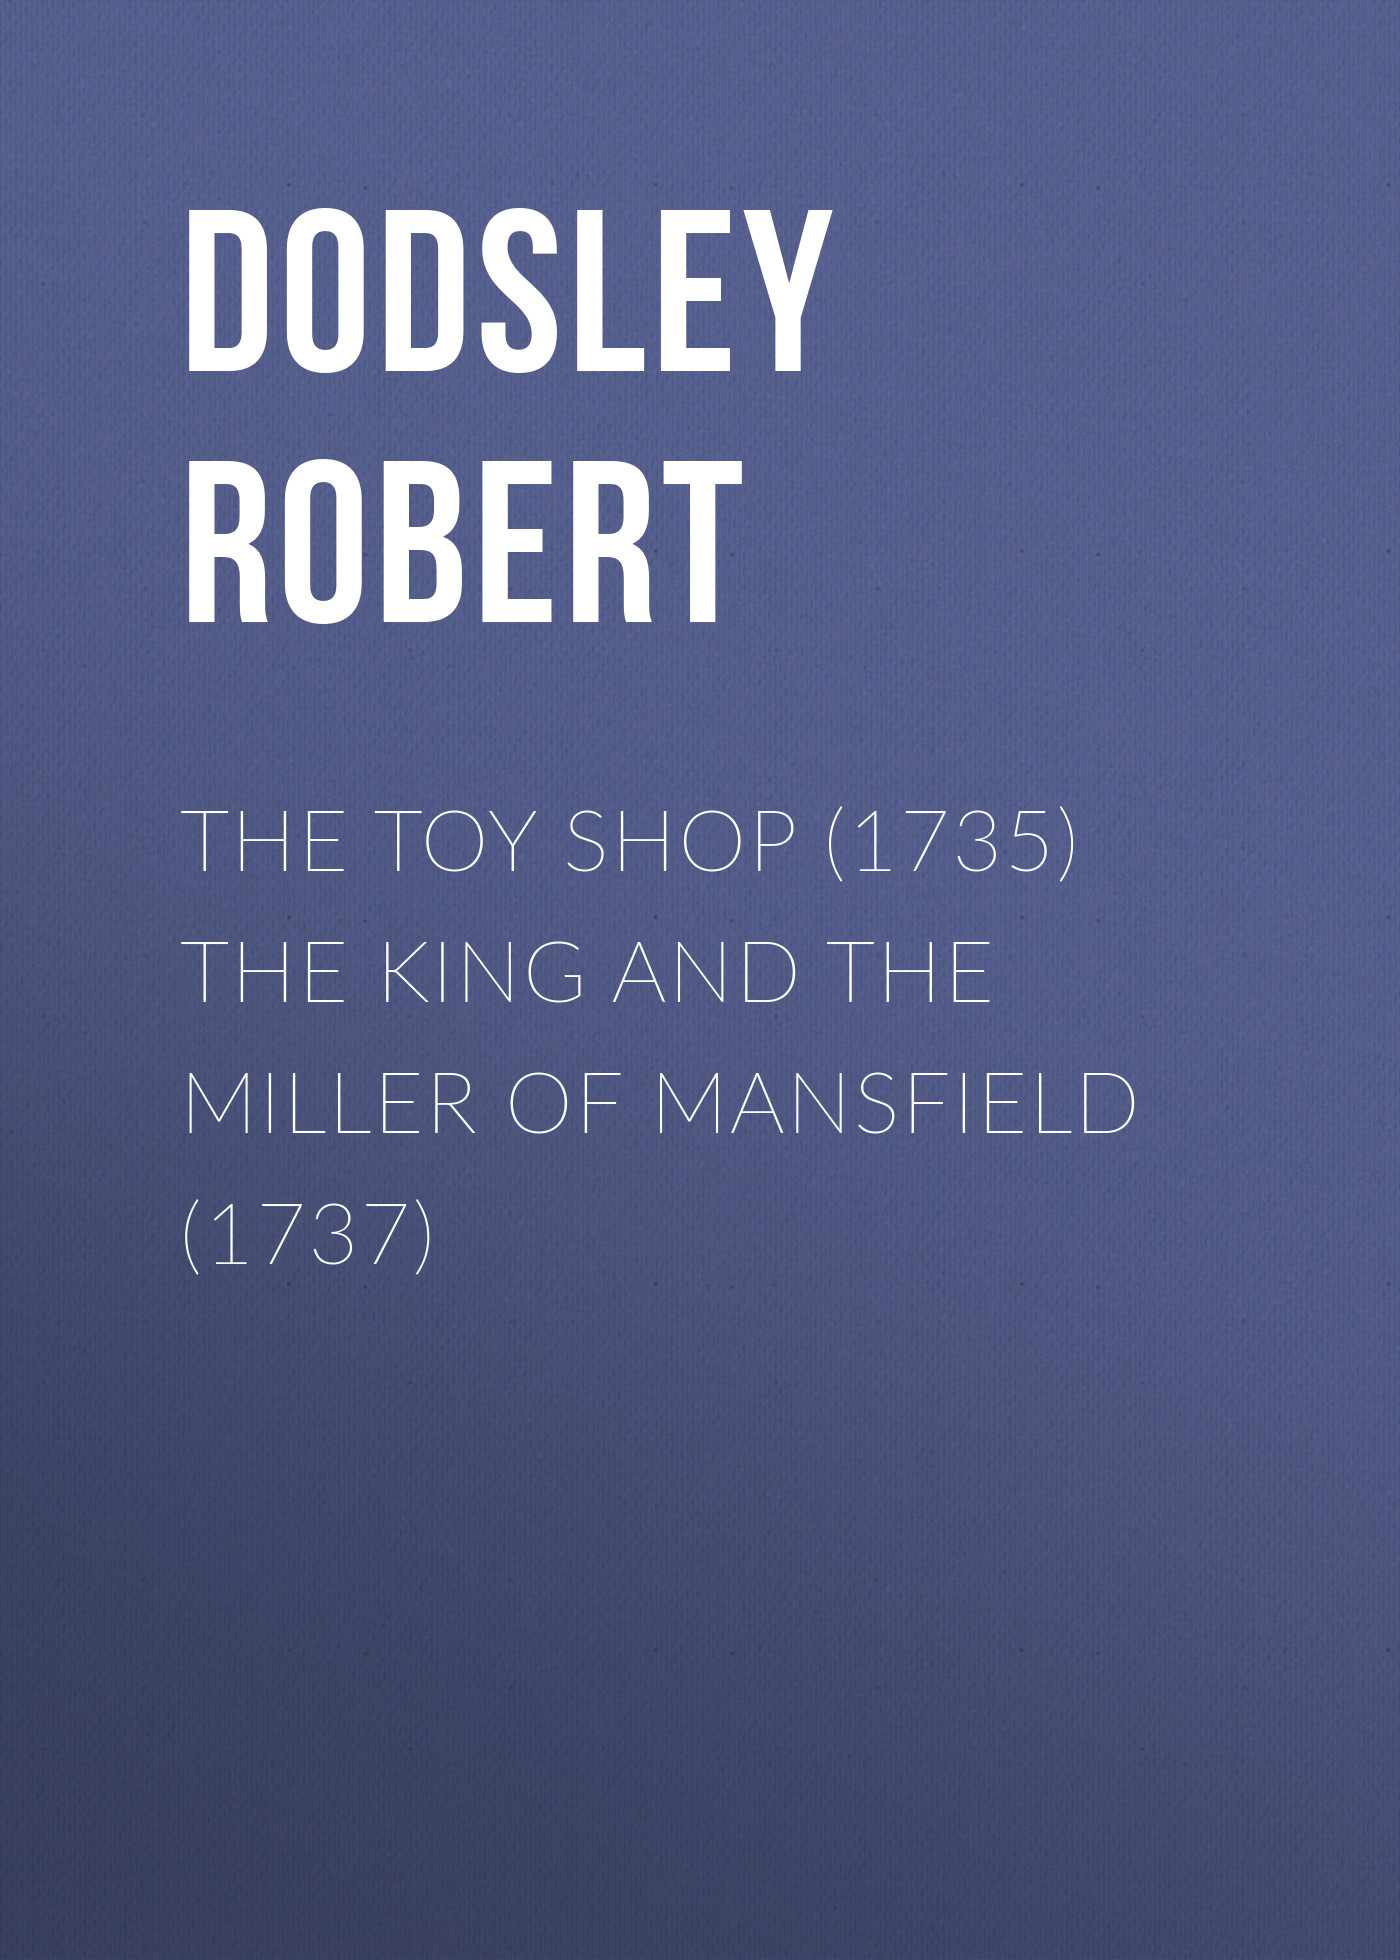 Книга The Toy Shop (1735) The King and the Miller of Mansfield (1737) из серии , созданная Robert Dodsley, может относится к жанру Литература 18 века, Зарубежная старинная литература, Зарубежная классика, Зарубежная драматургия. Стоимость электронной книги The Toy Shop (1735) The King and the Miller of Mansfield (1737) с идентификатором 24619373 составляет 0 руб.